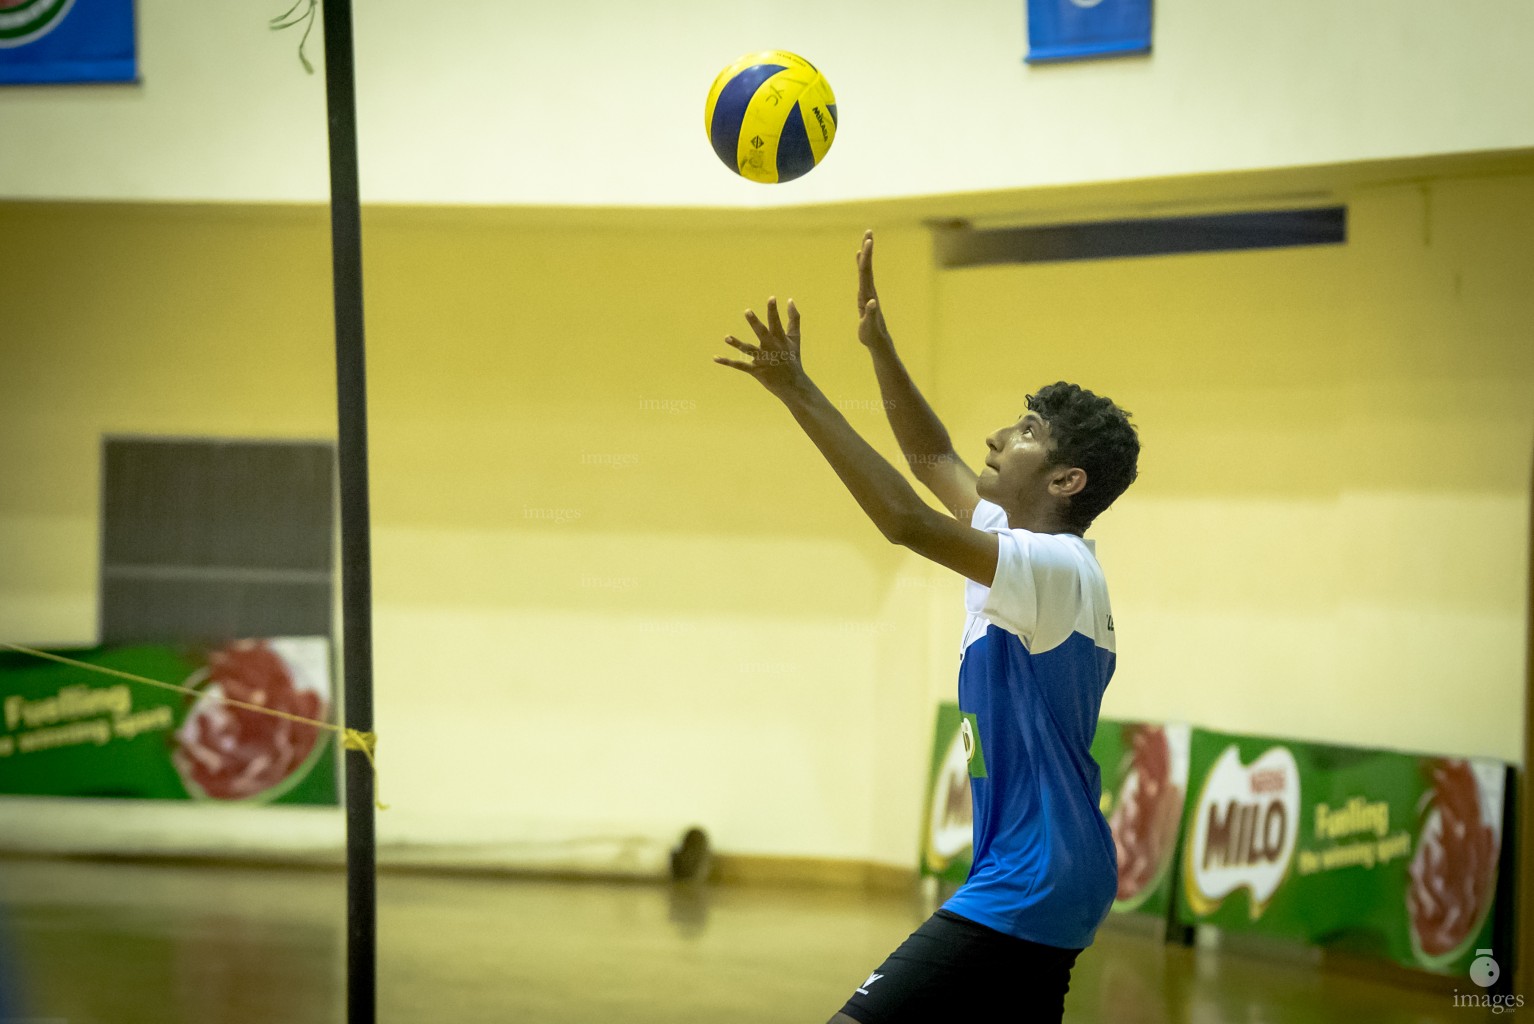 MILO Interschool Volleyball Tournament 2018 (Day 3)